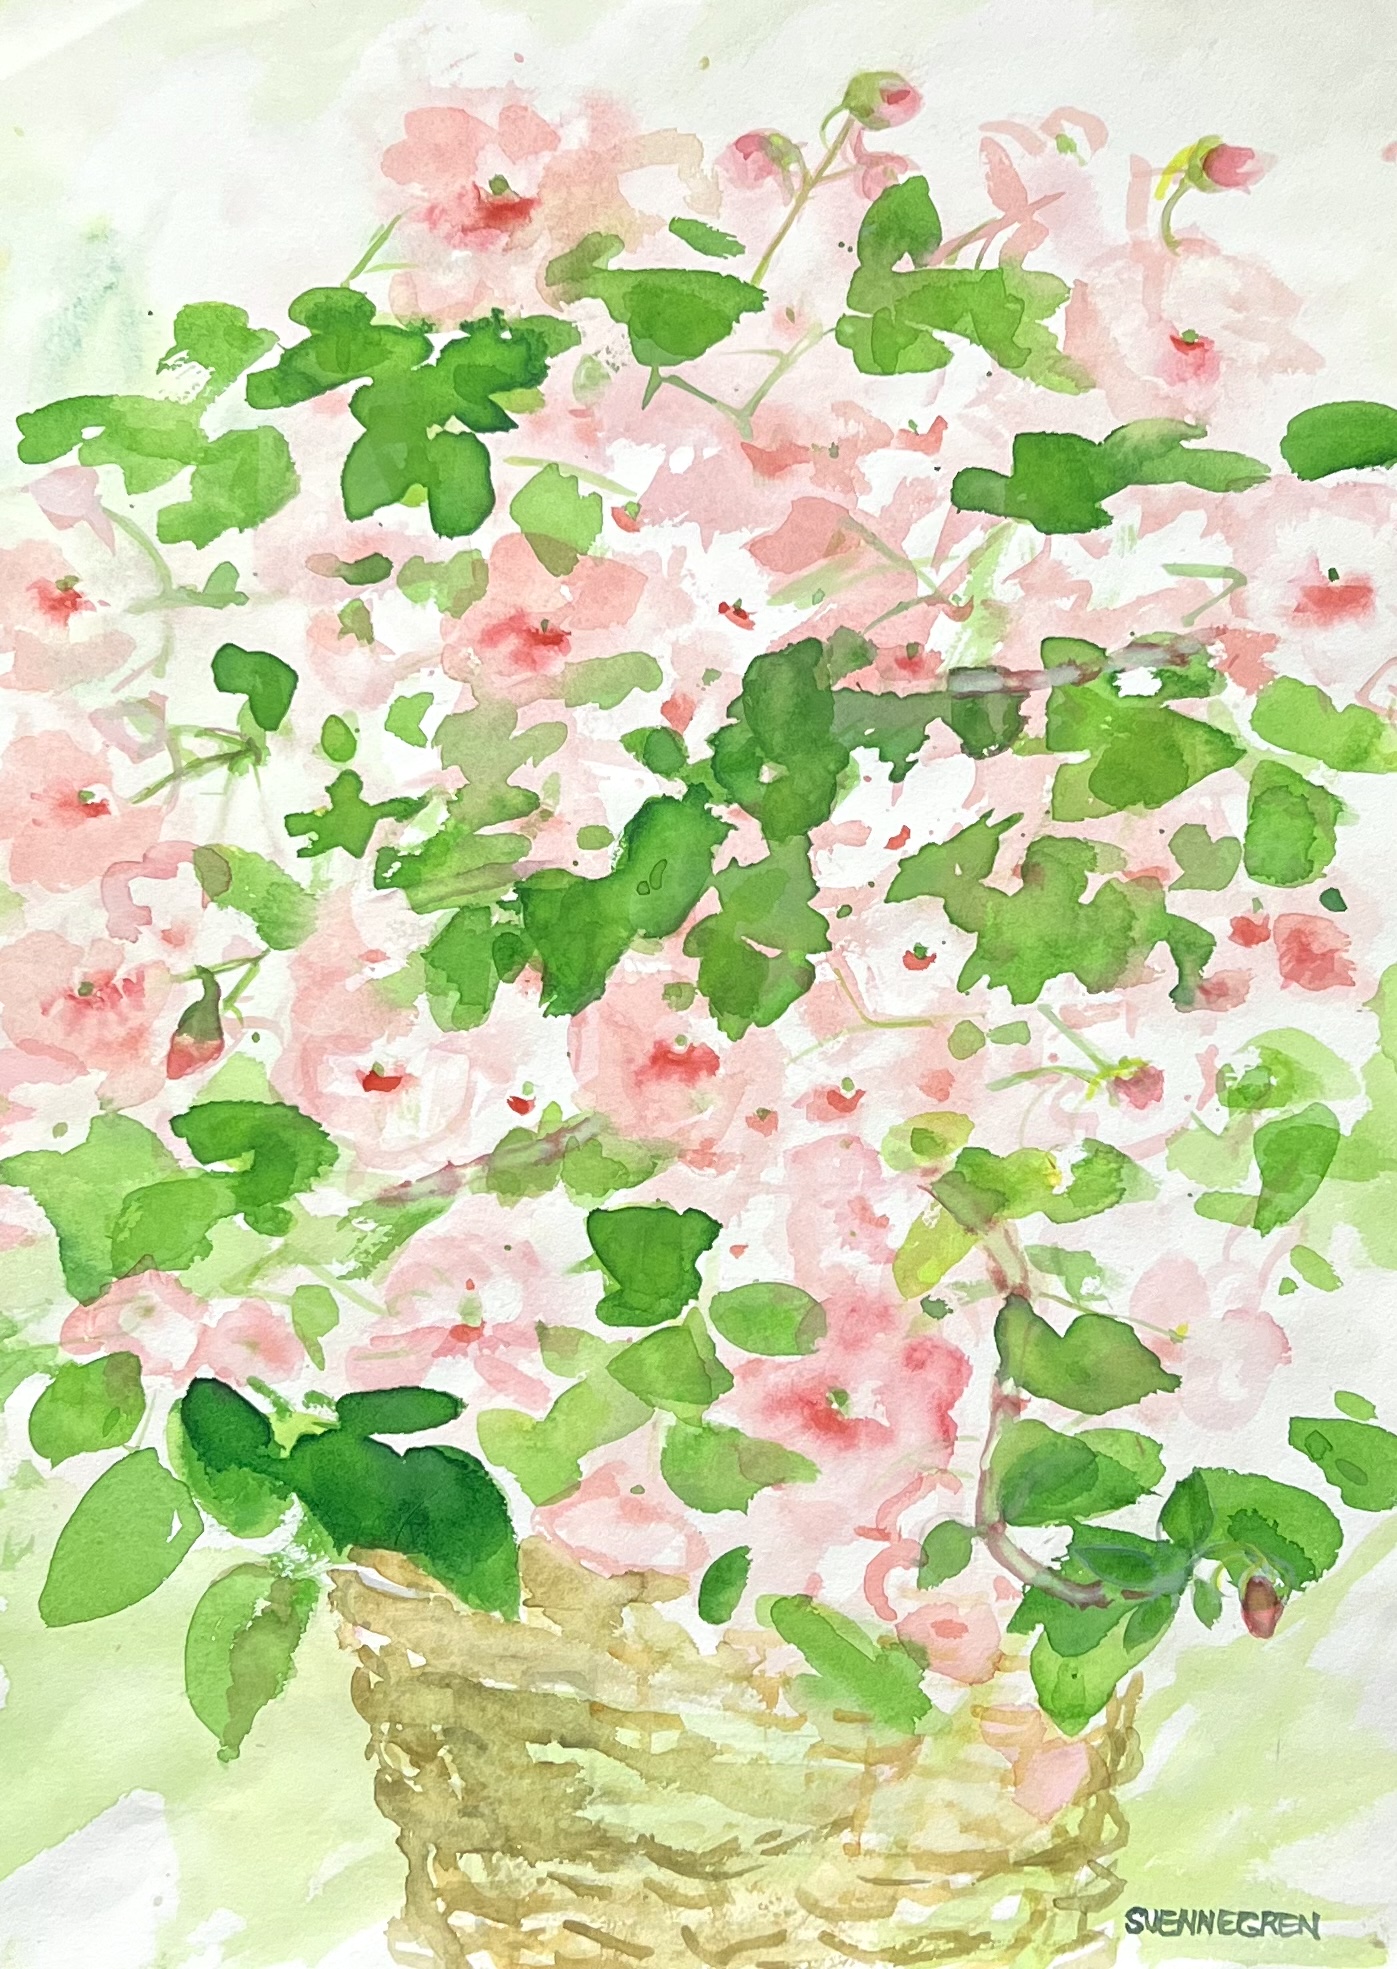 Akvarell av Solveig Svennegren. 36x48 cm